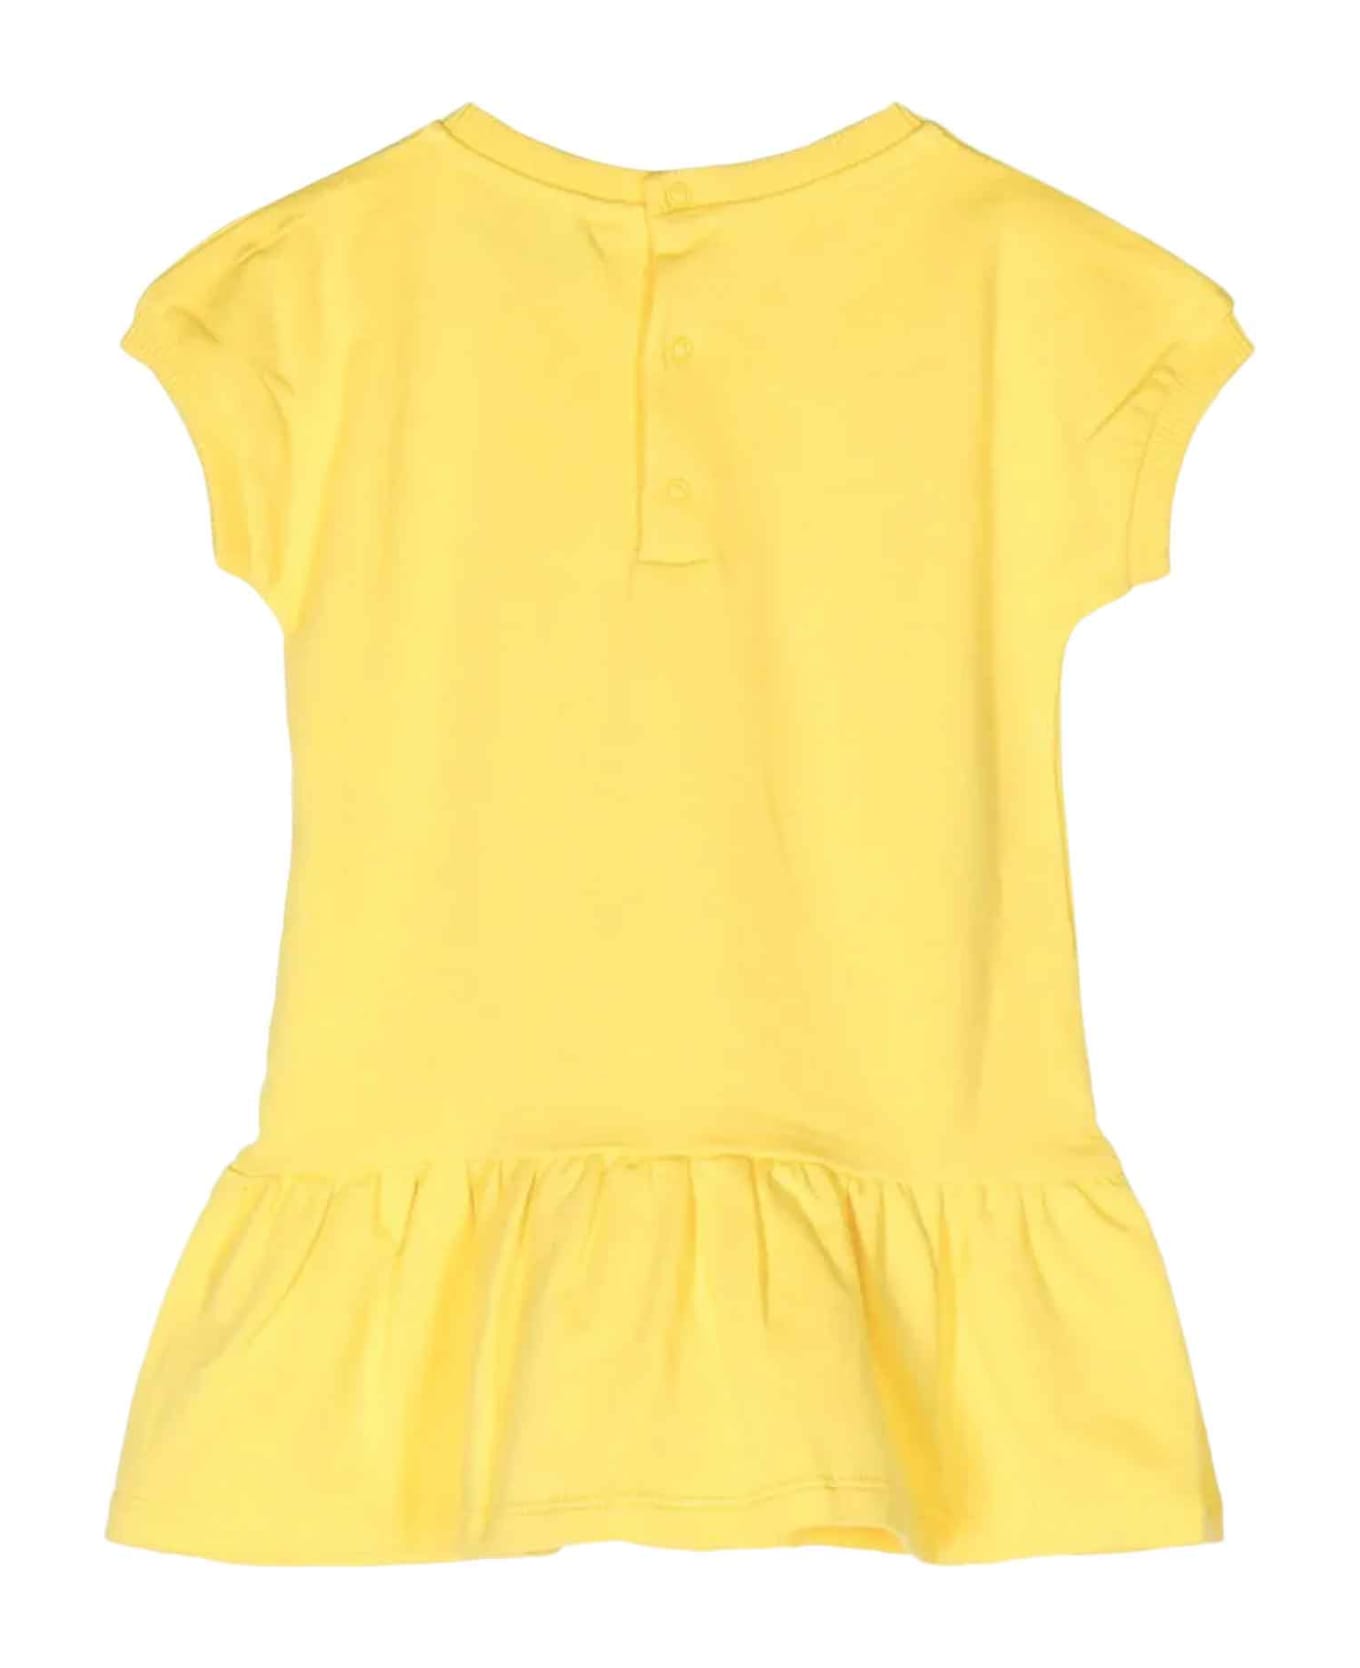 Moschino Yellow Dress Baby Girl - Giallo